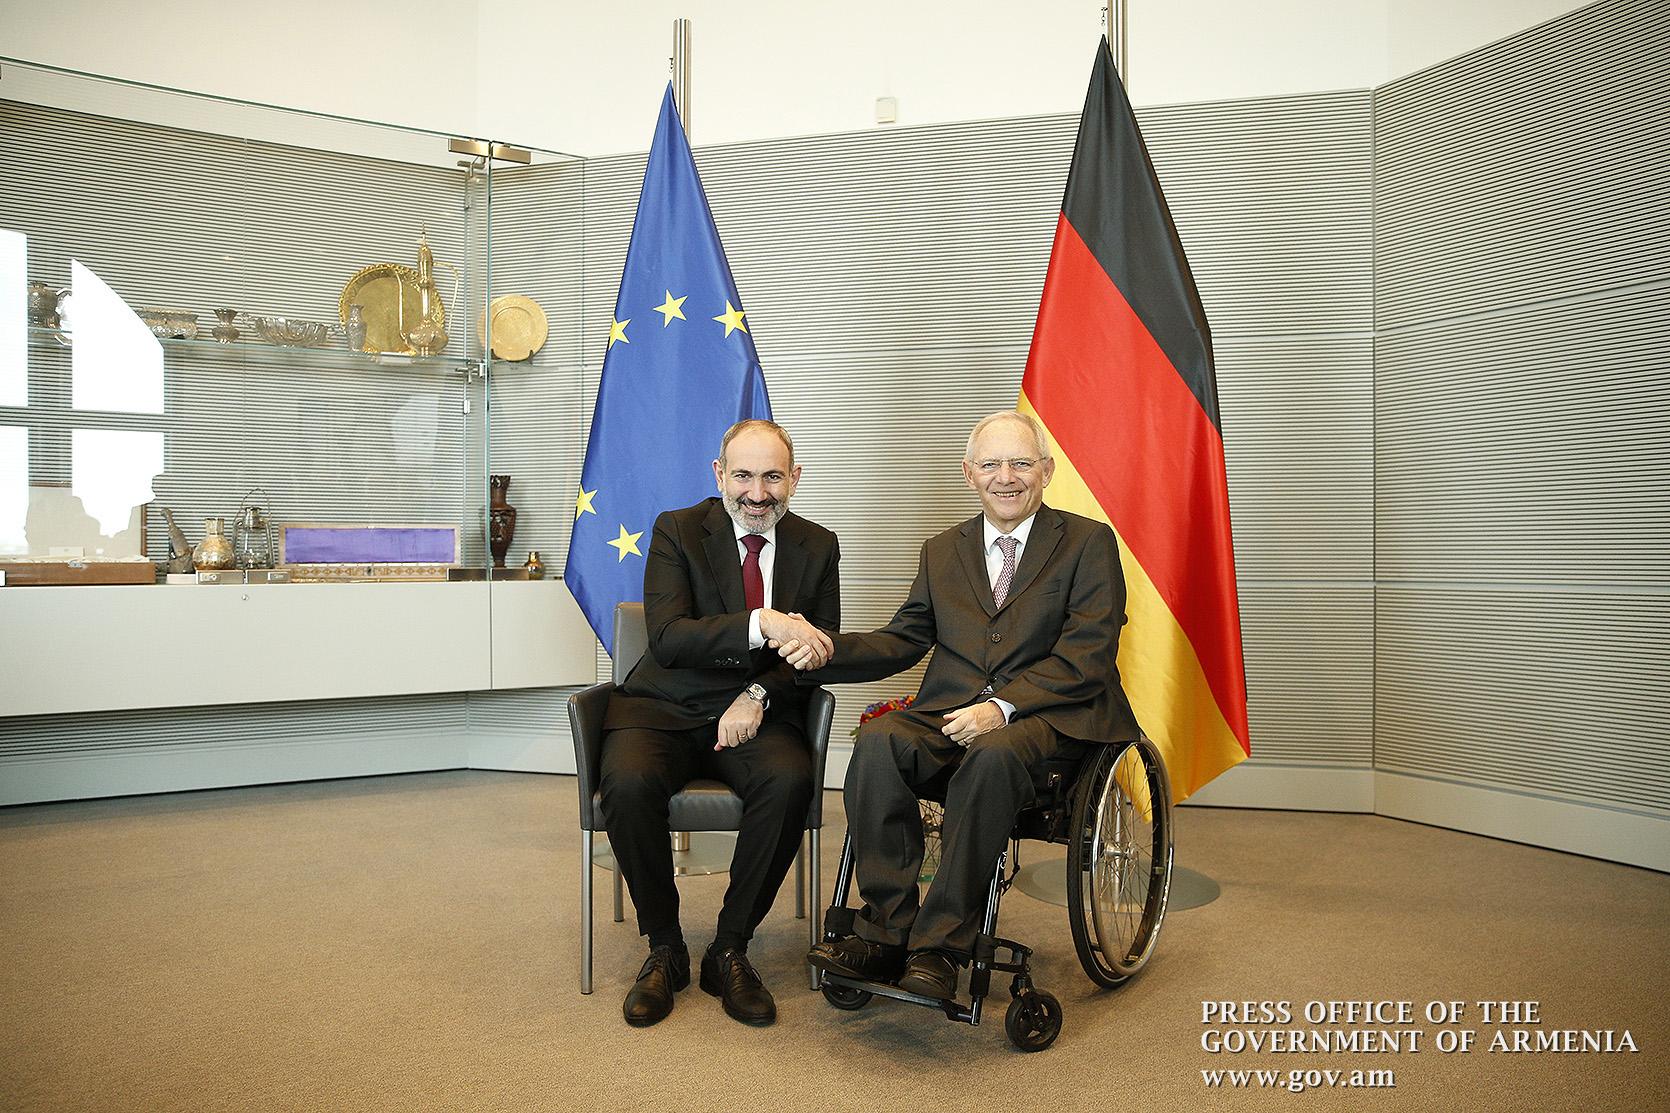 Գերմանիան աջակցում է ՀՀ-ում իրականացվող դատաիրավական բարեփոխումներին. Բունդեսթագի նախագահ